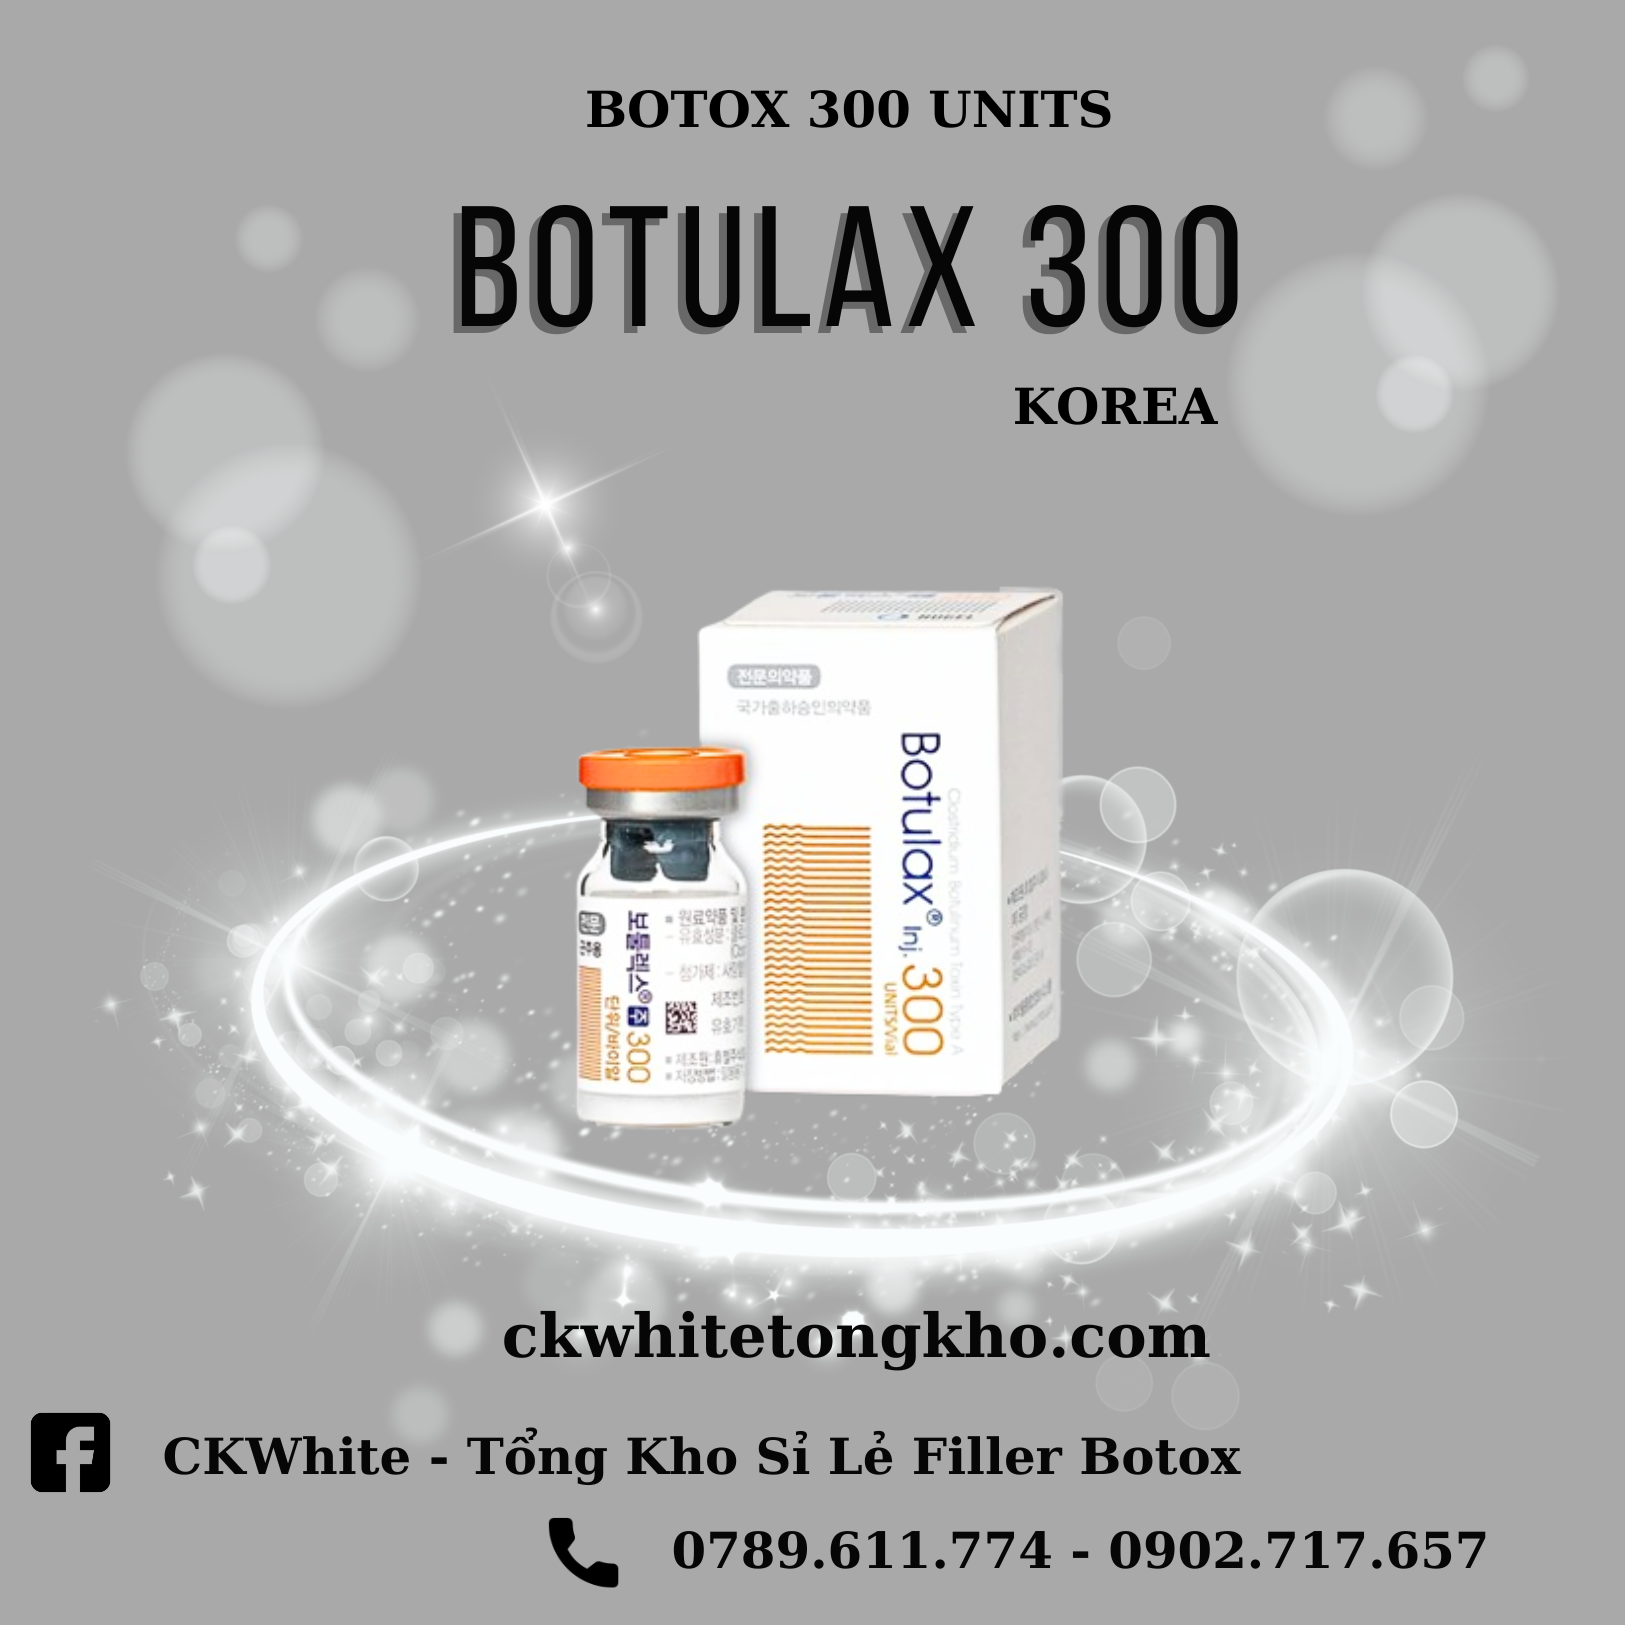 BOTOX BOTULAX 300